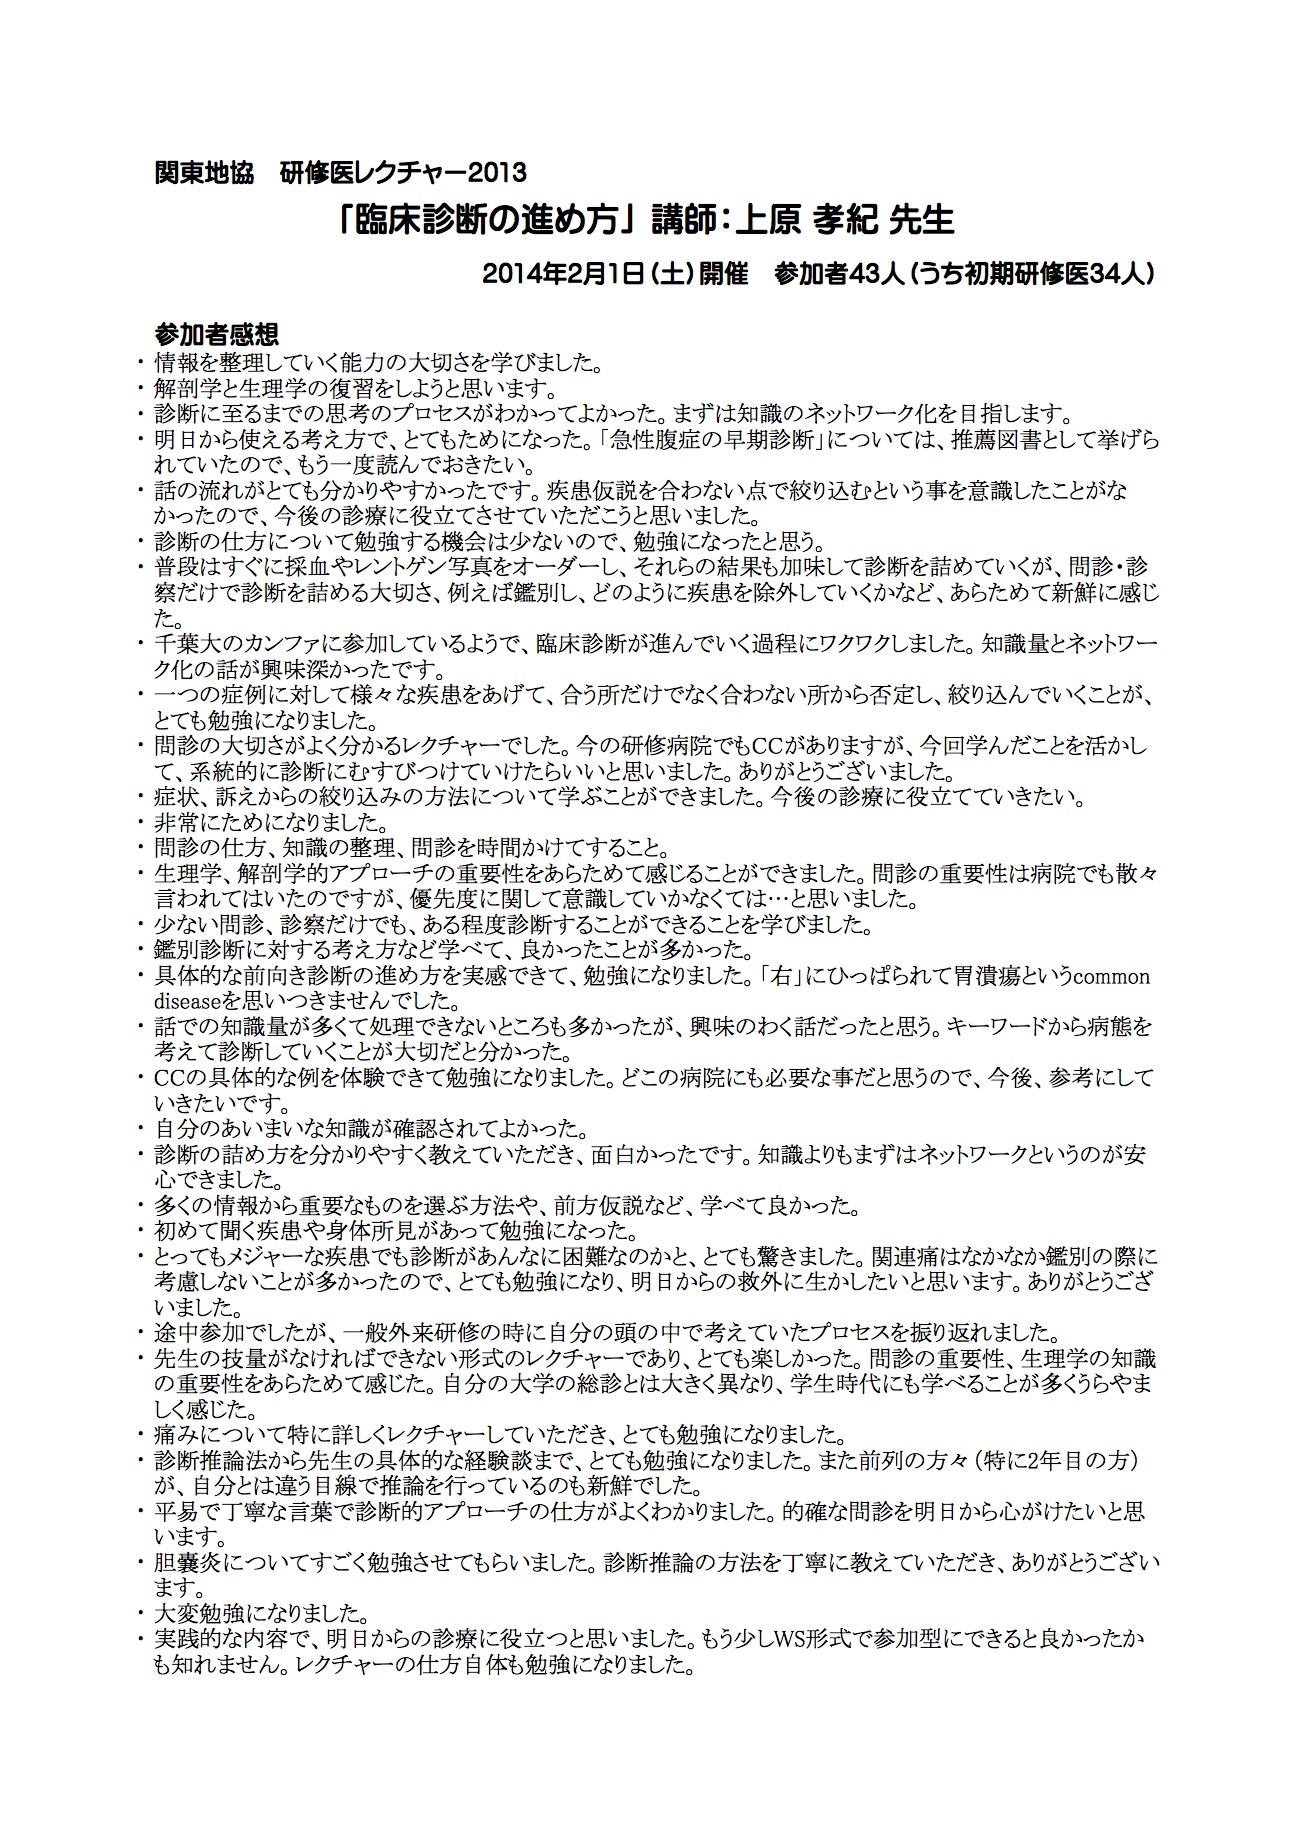 2014.02.01 民医連研修医レクチャー「臨床診断」 感想まとめ